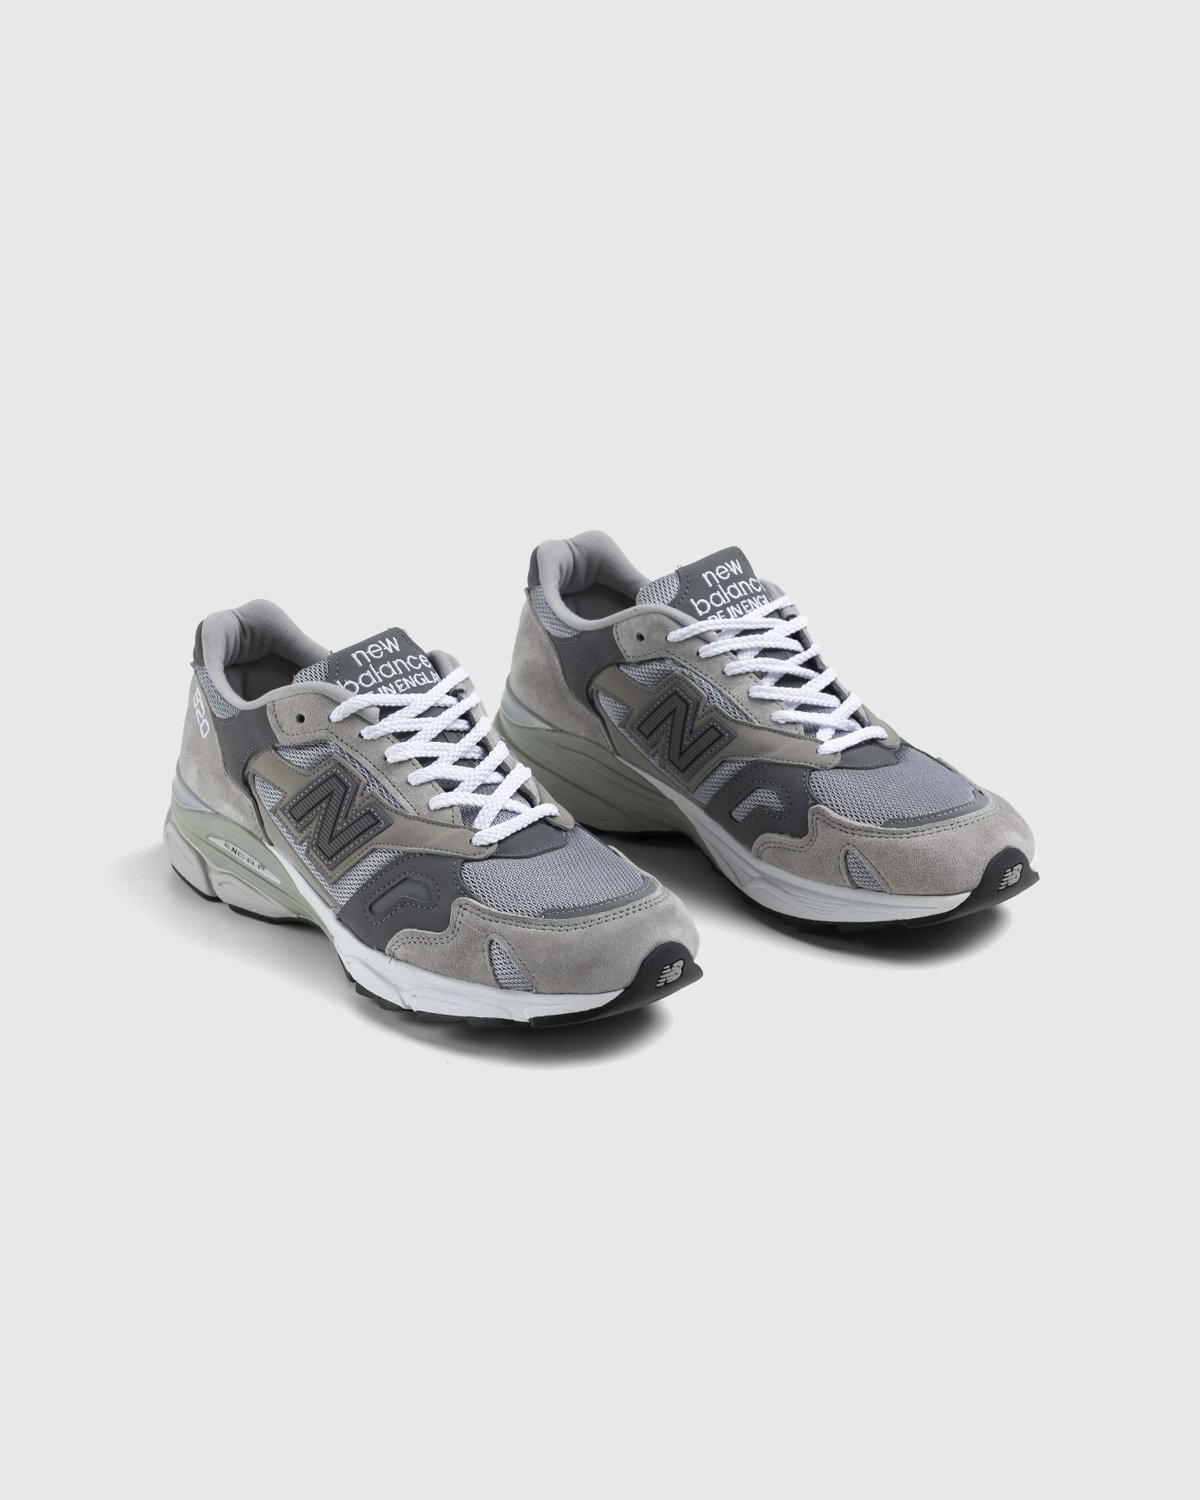 New Balance - M920GRY Grey - Footwear - Grey - Image 3